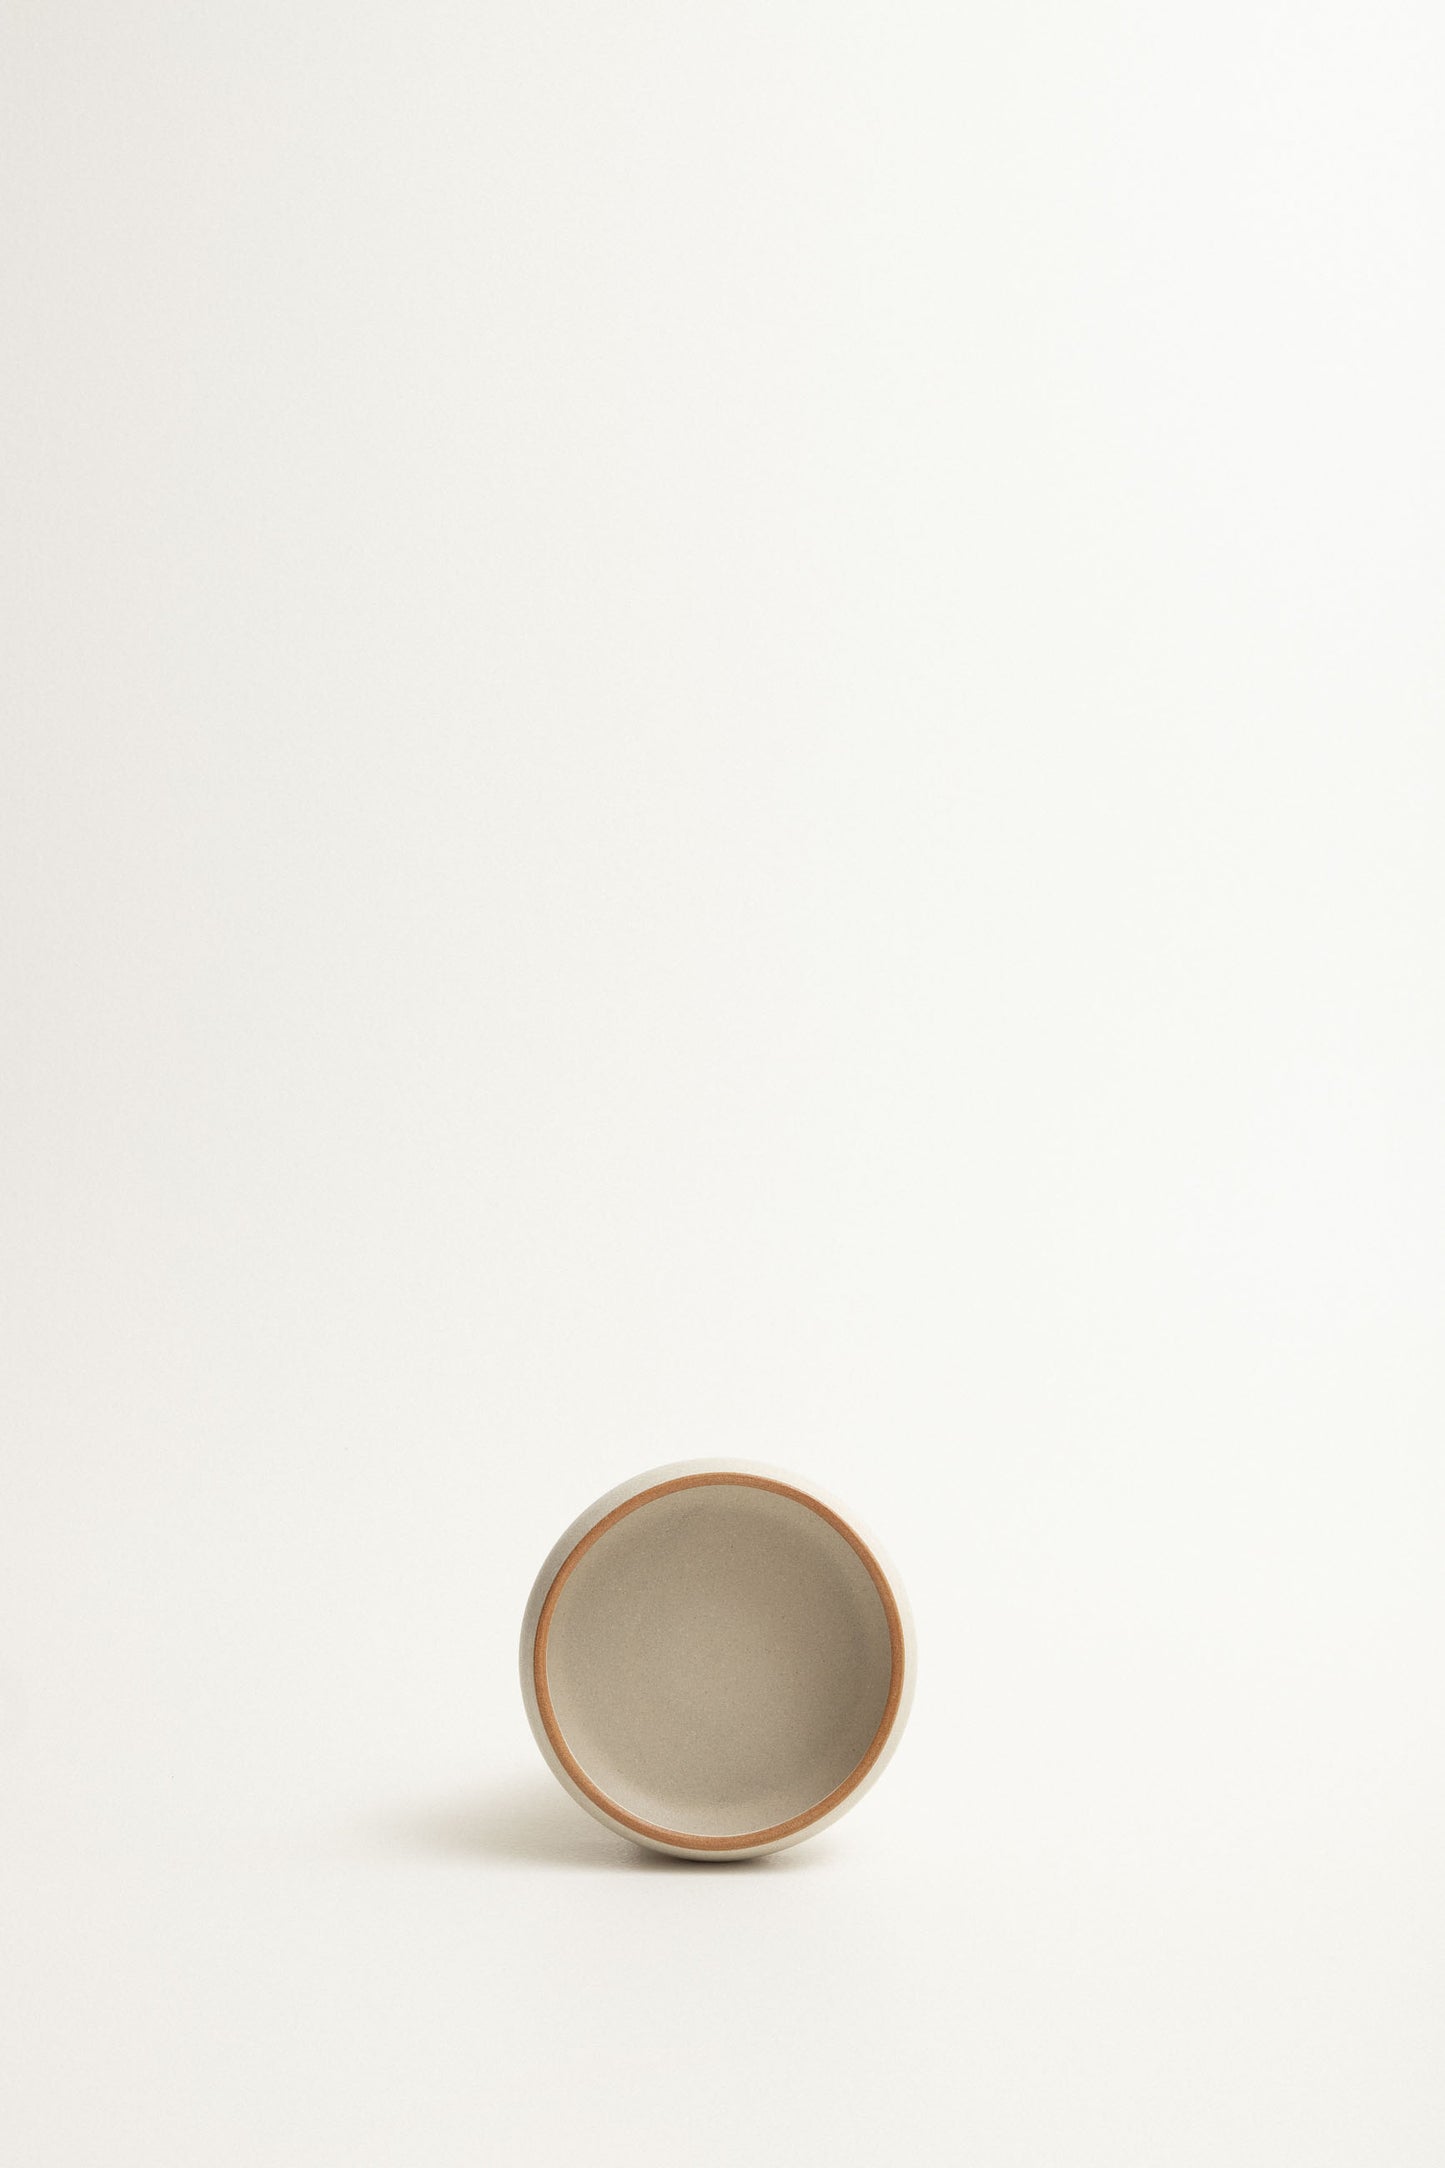 Olive bowl - Fog / toasted